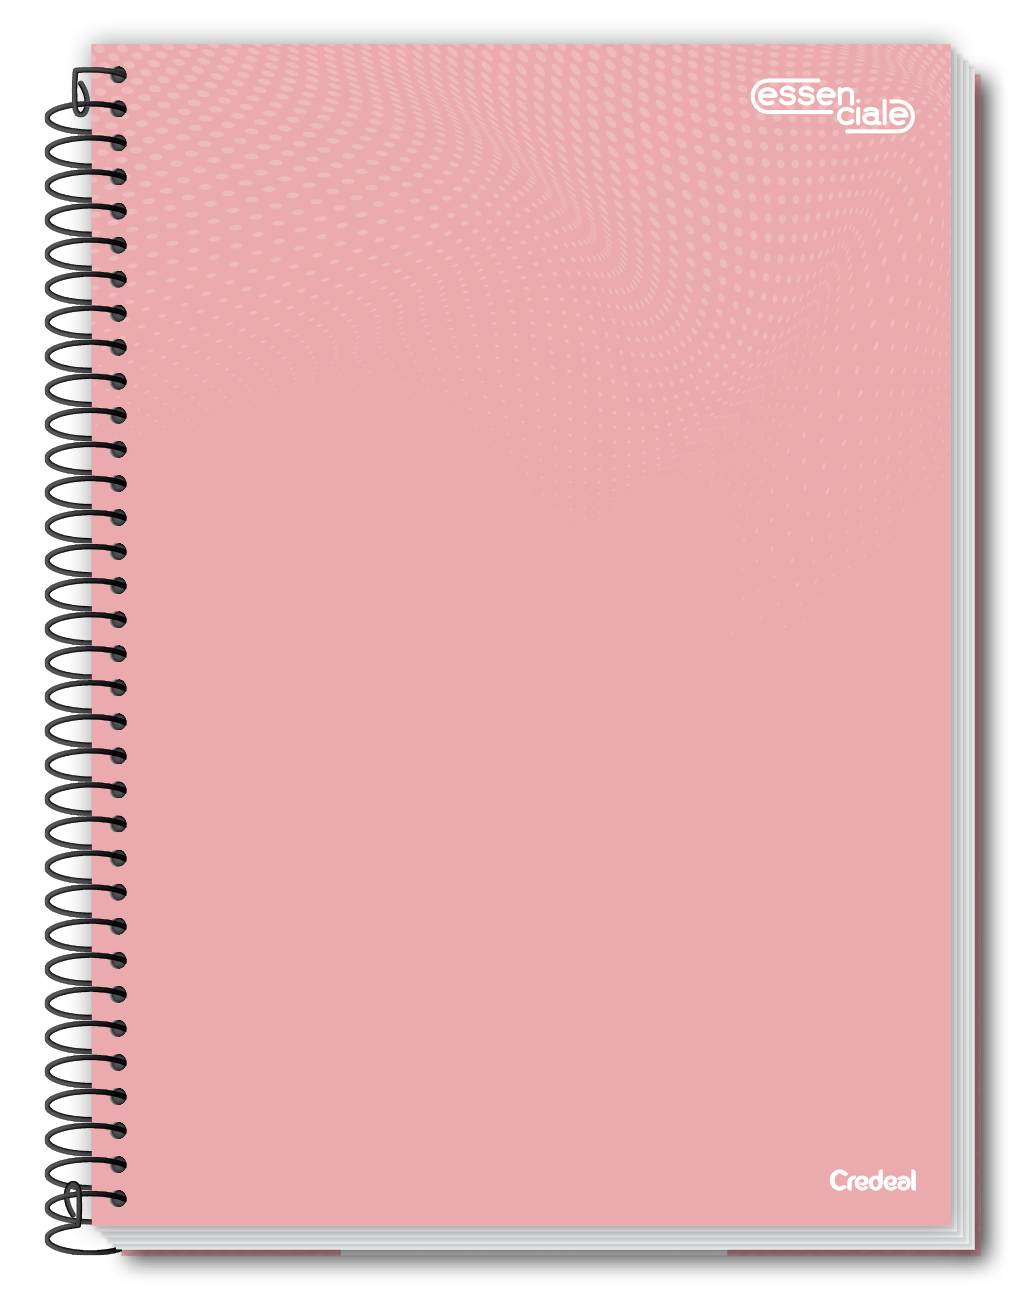 Essenciale Colors - Caderno Espiral